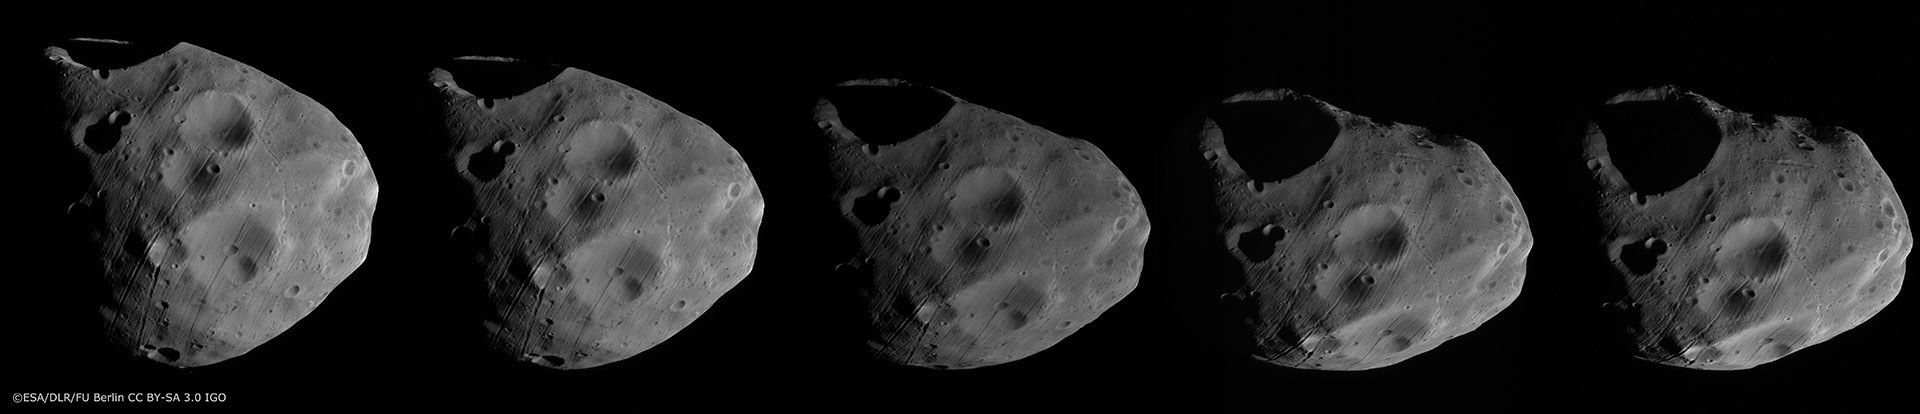 Verbesserung des Figurenmodells von Phobos